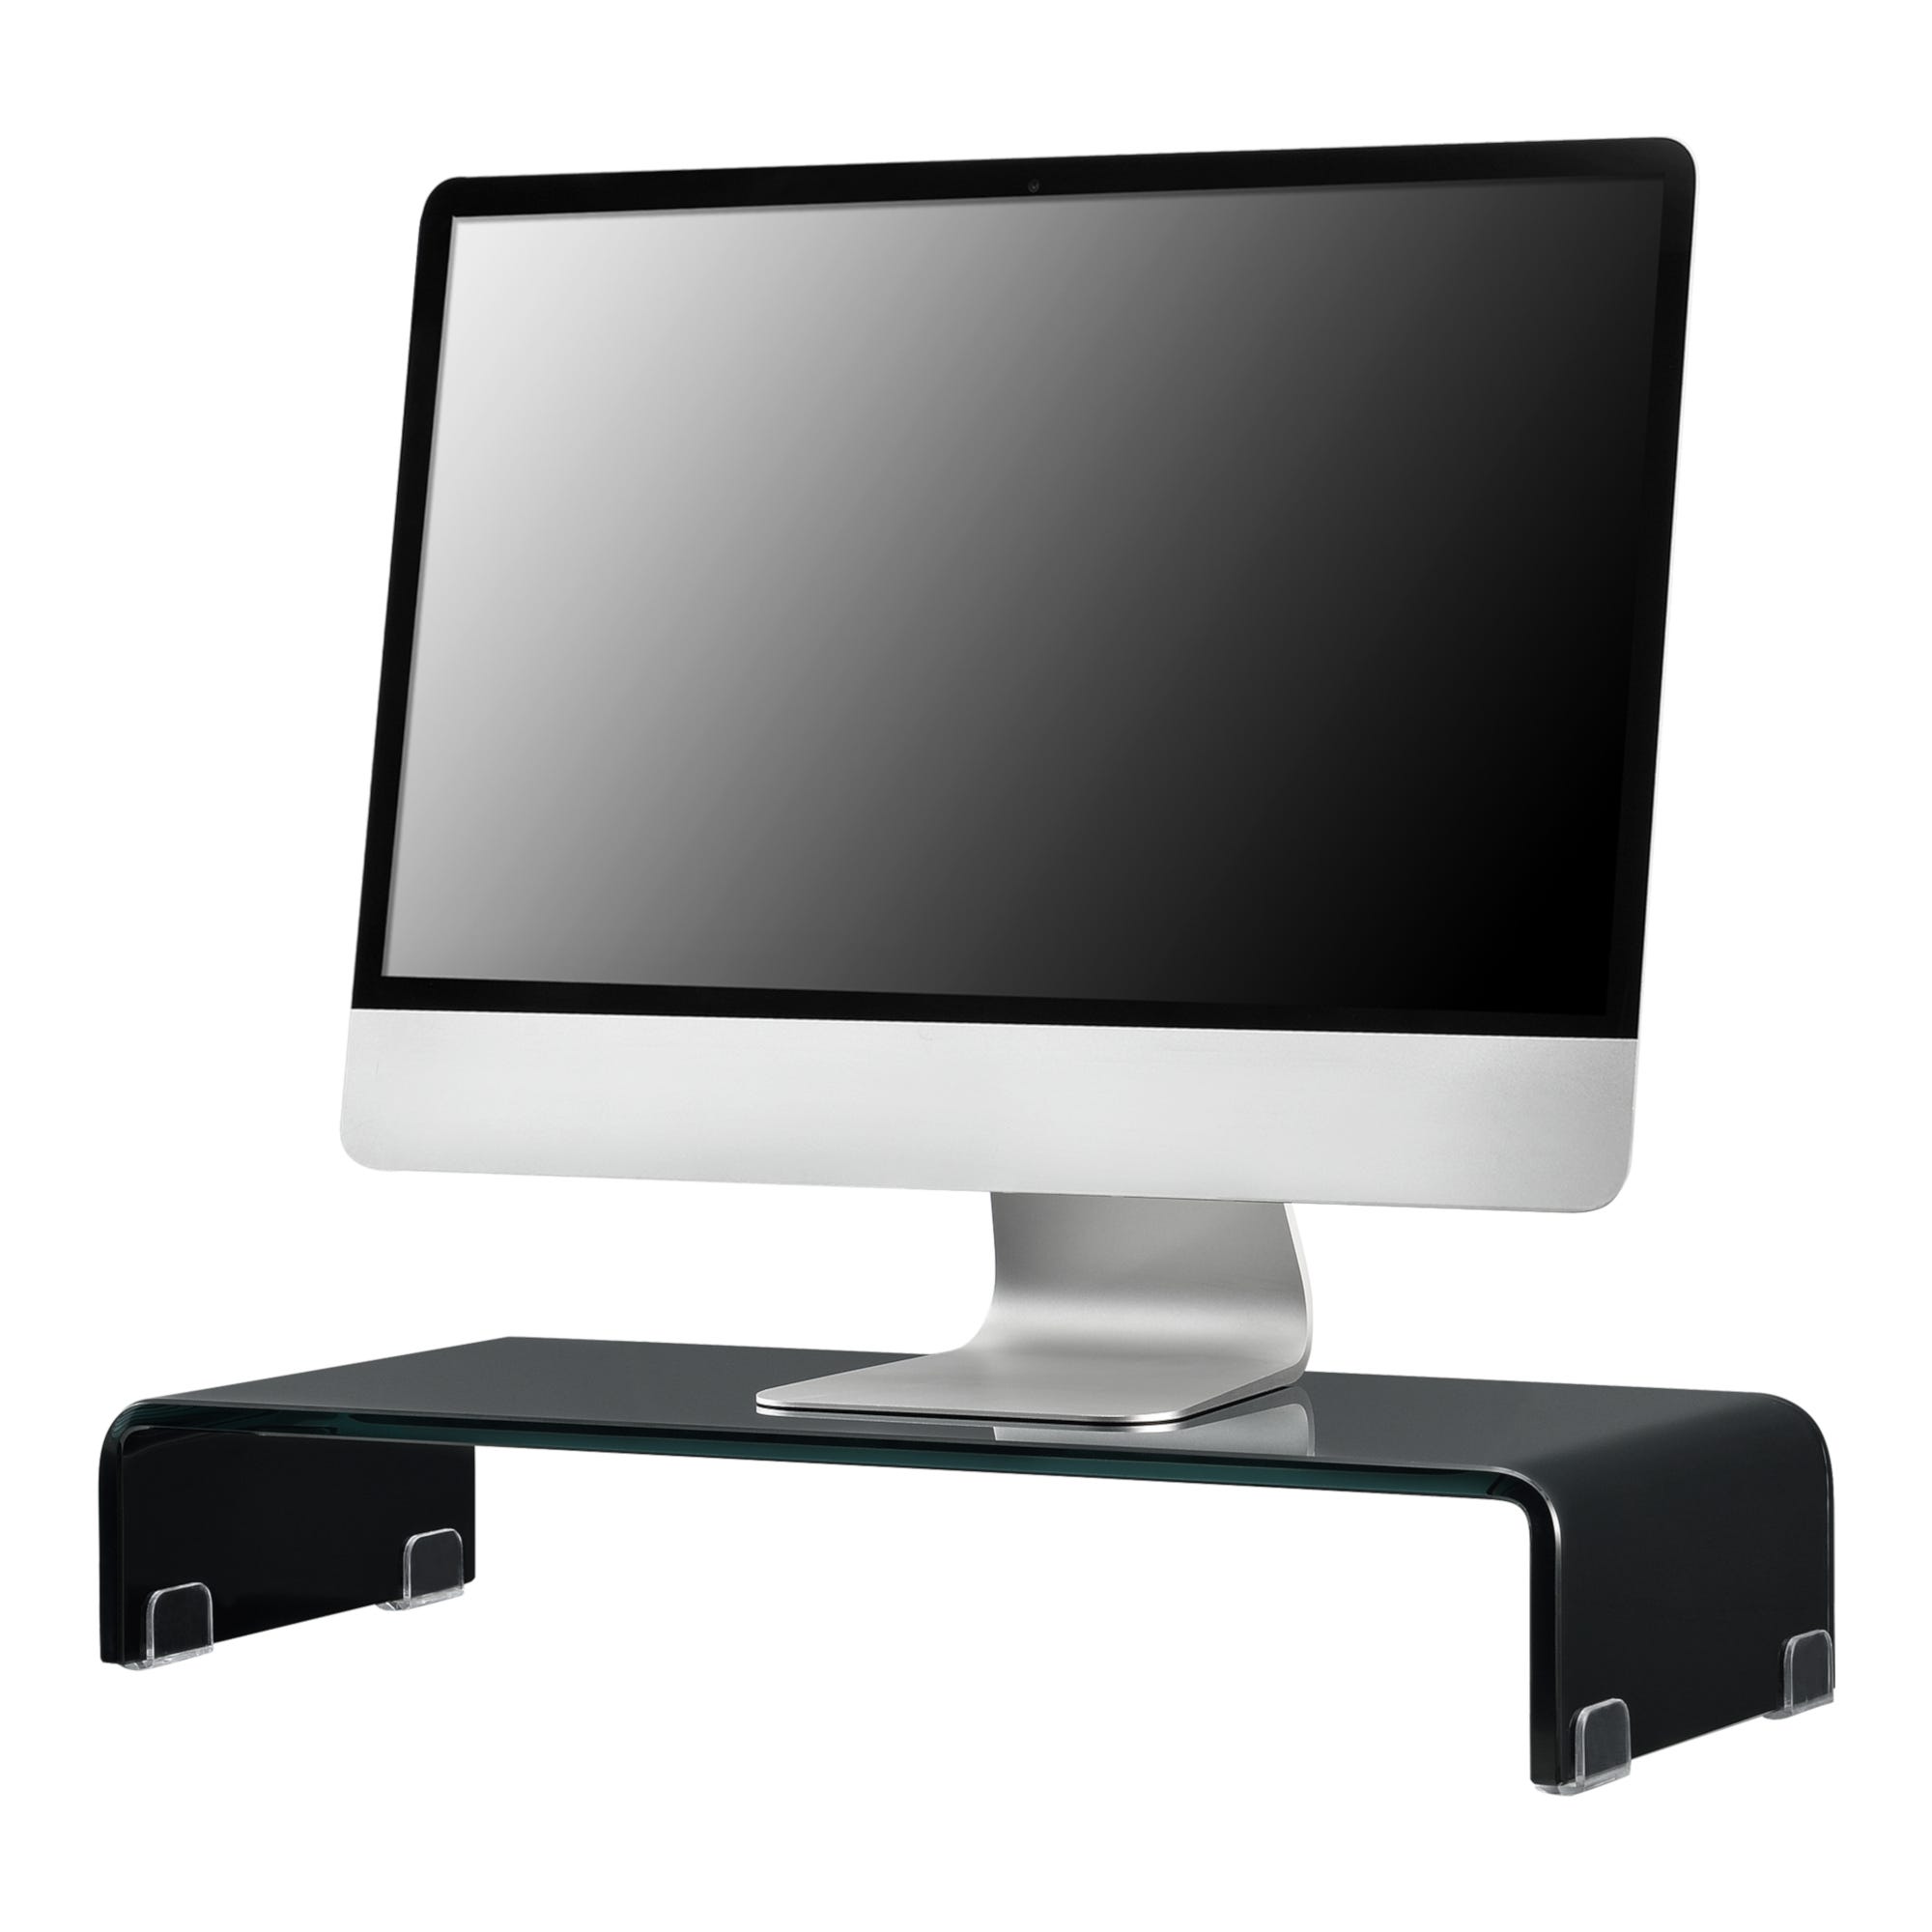 Supporto di Rialzo Monitor/TV/PC Portatile 70 x 30 x 13 cm Mobile in Vetro  Base per Schermi - Nero Lucido, Laccato